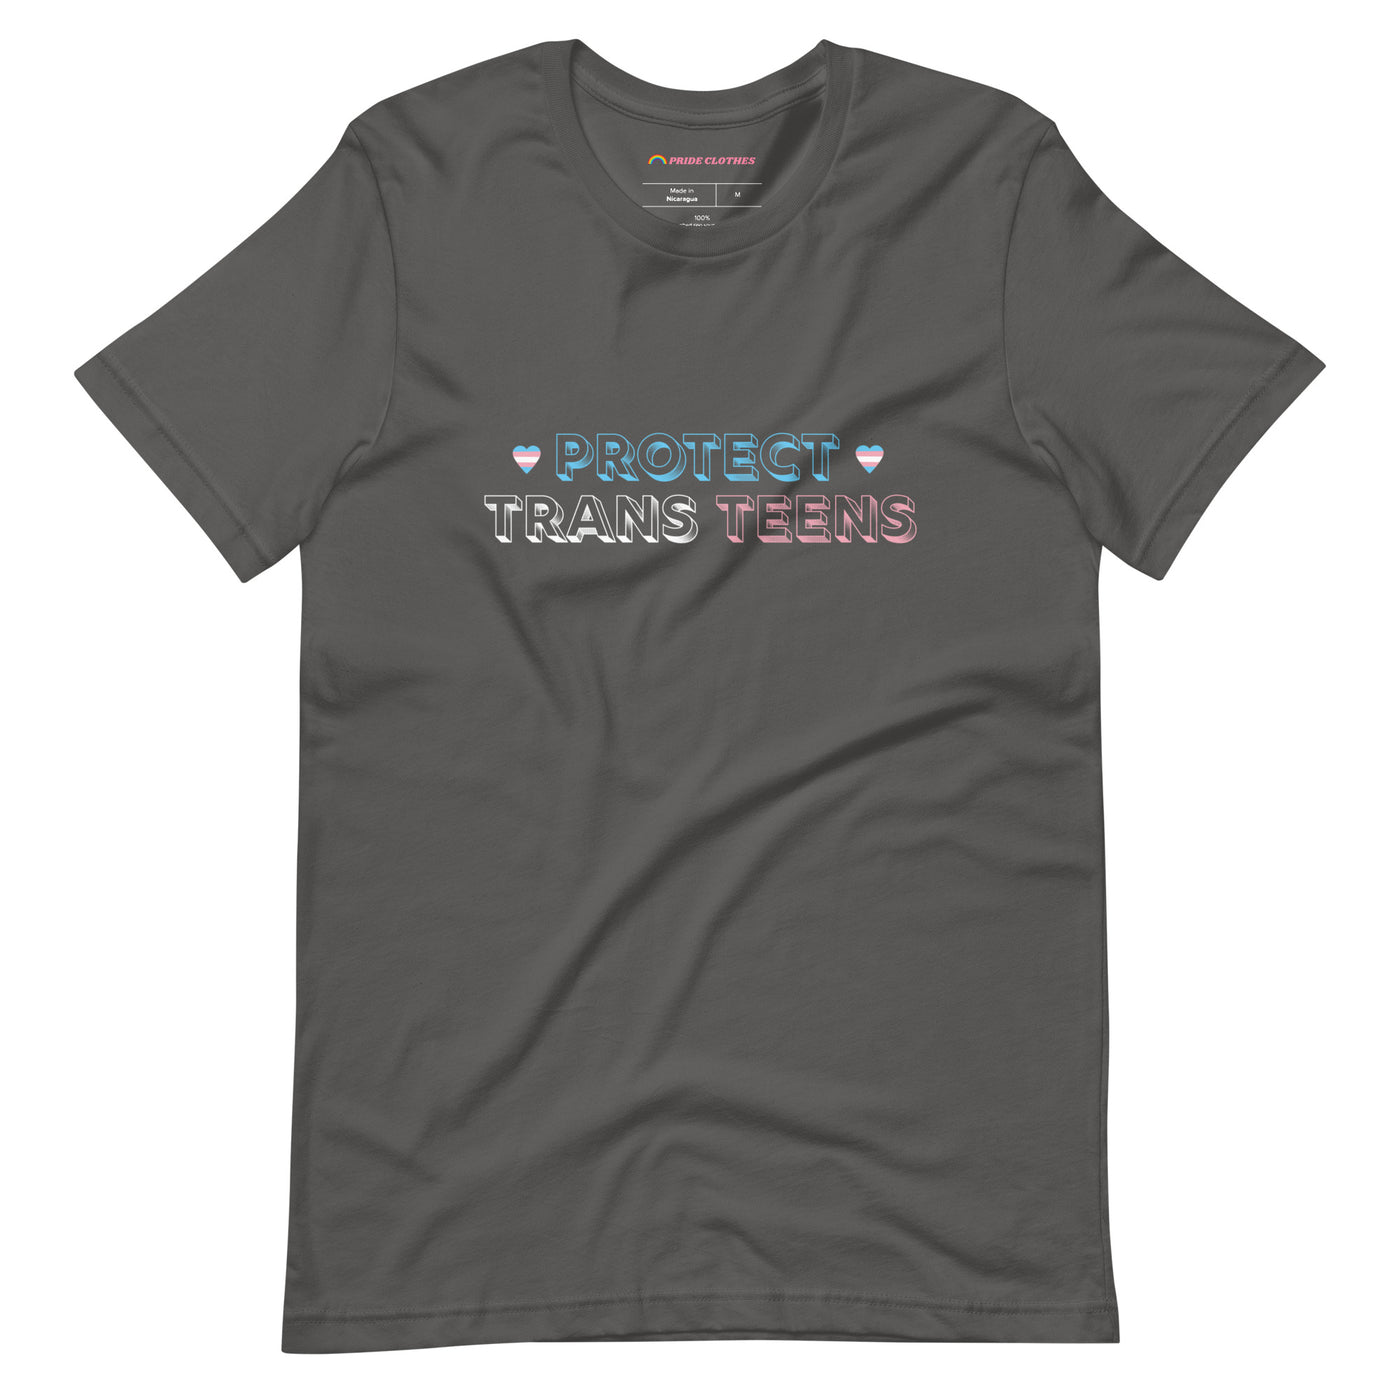 Pride Clothes - Trans Teens Matter Protect Trans Teens Pride T-Shirt - Asphalt